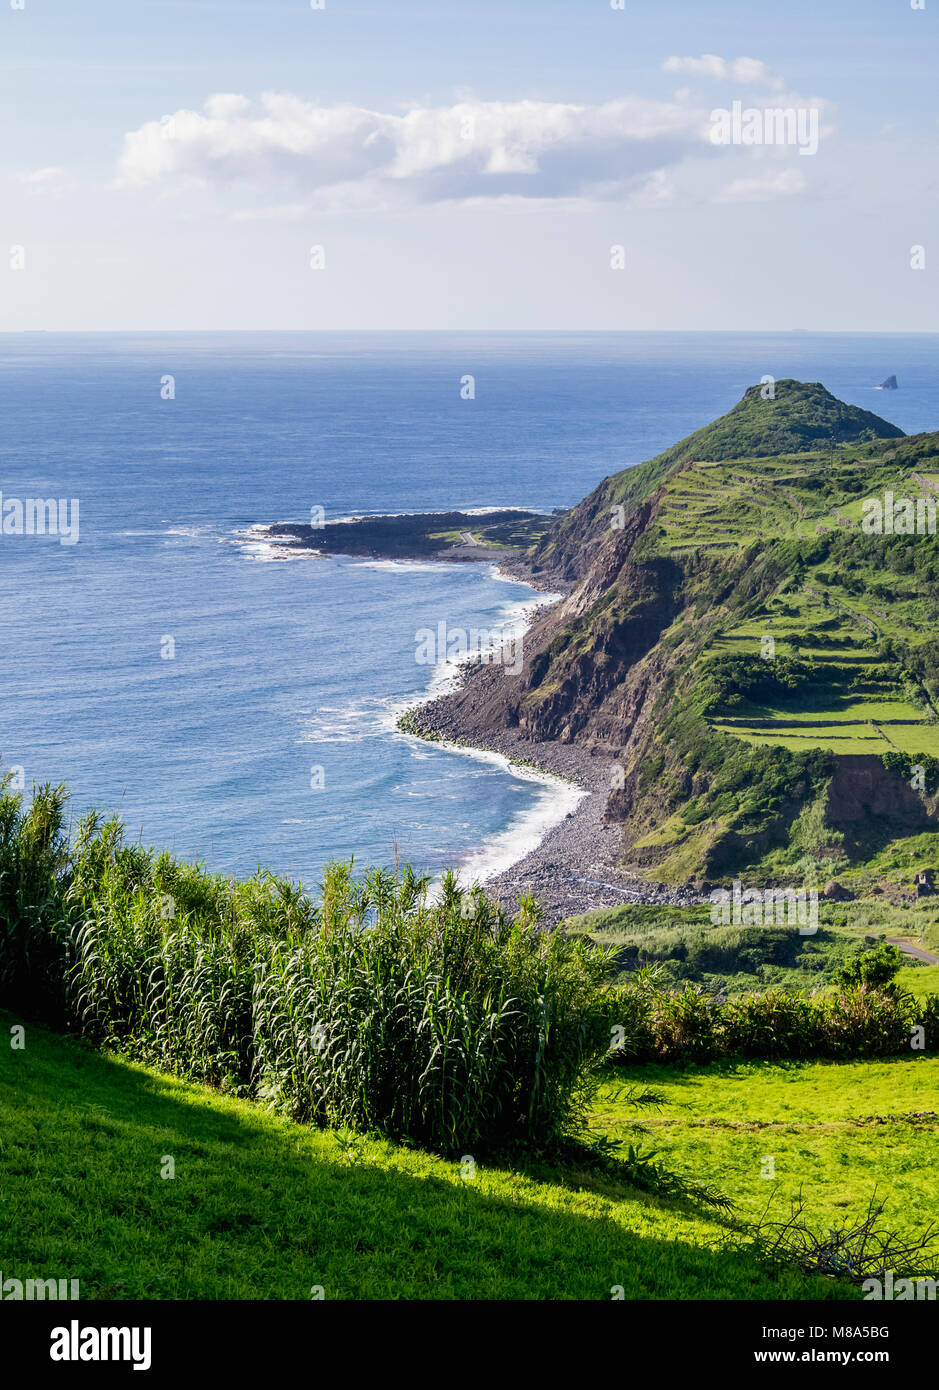 El paisaje de la isla de Flores, Azores, Portugal Fotografía de stock -  Alamy